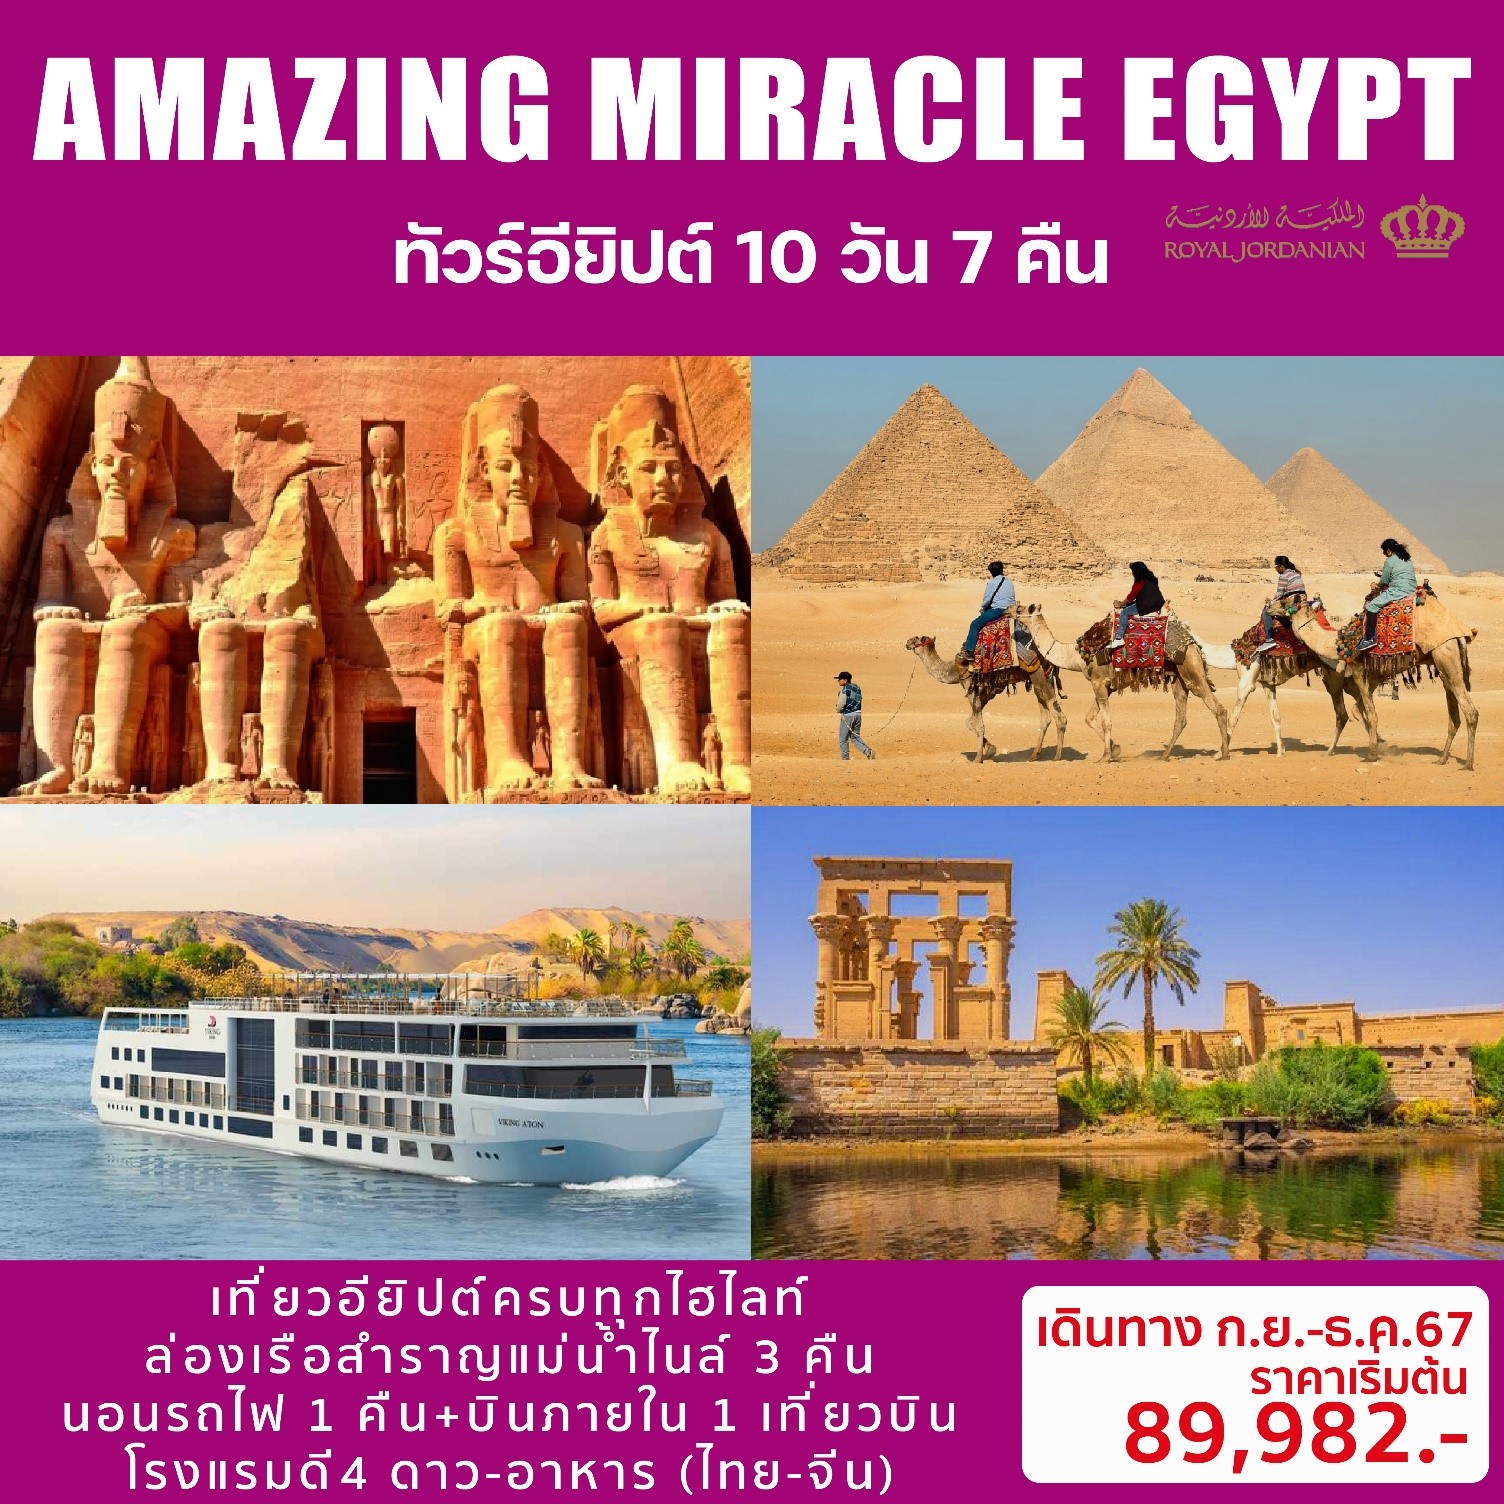 ทัวร์อียิปต์ AMAZING MIRACLE EGYPT 10วัน 7 คืน